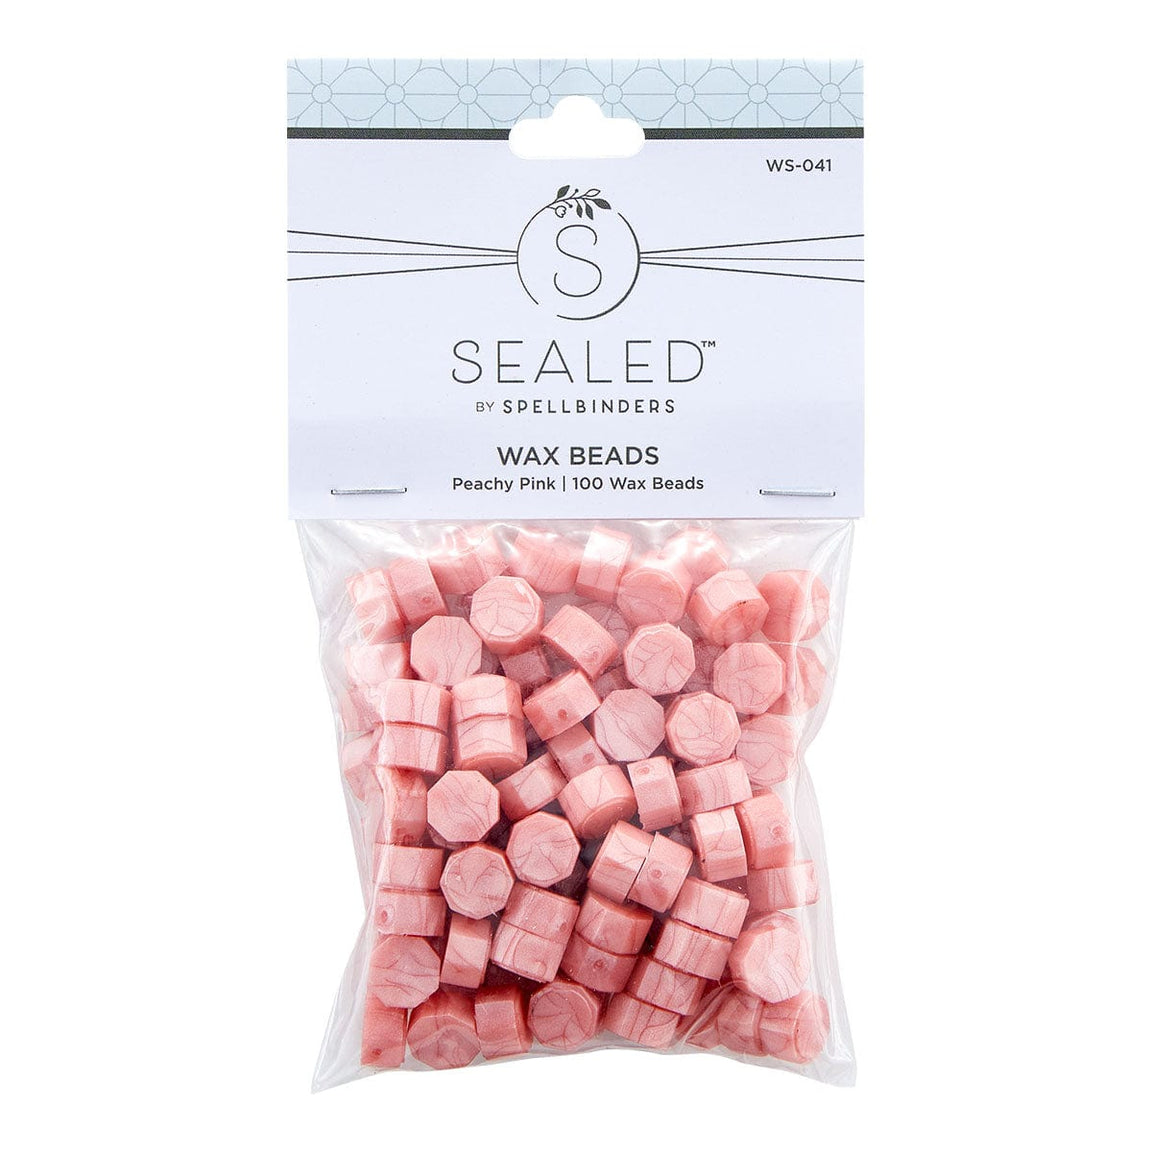 Spellbinders Peachy Pink Wax Beads - Sealed by Spellbinders Collection